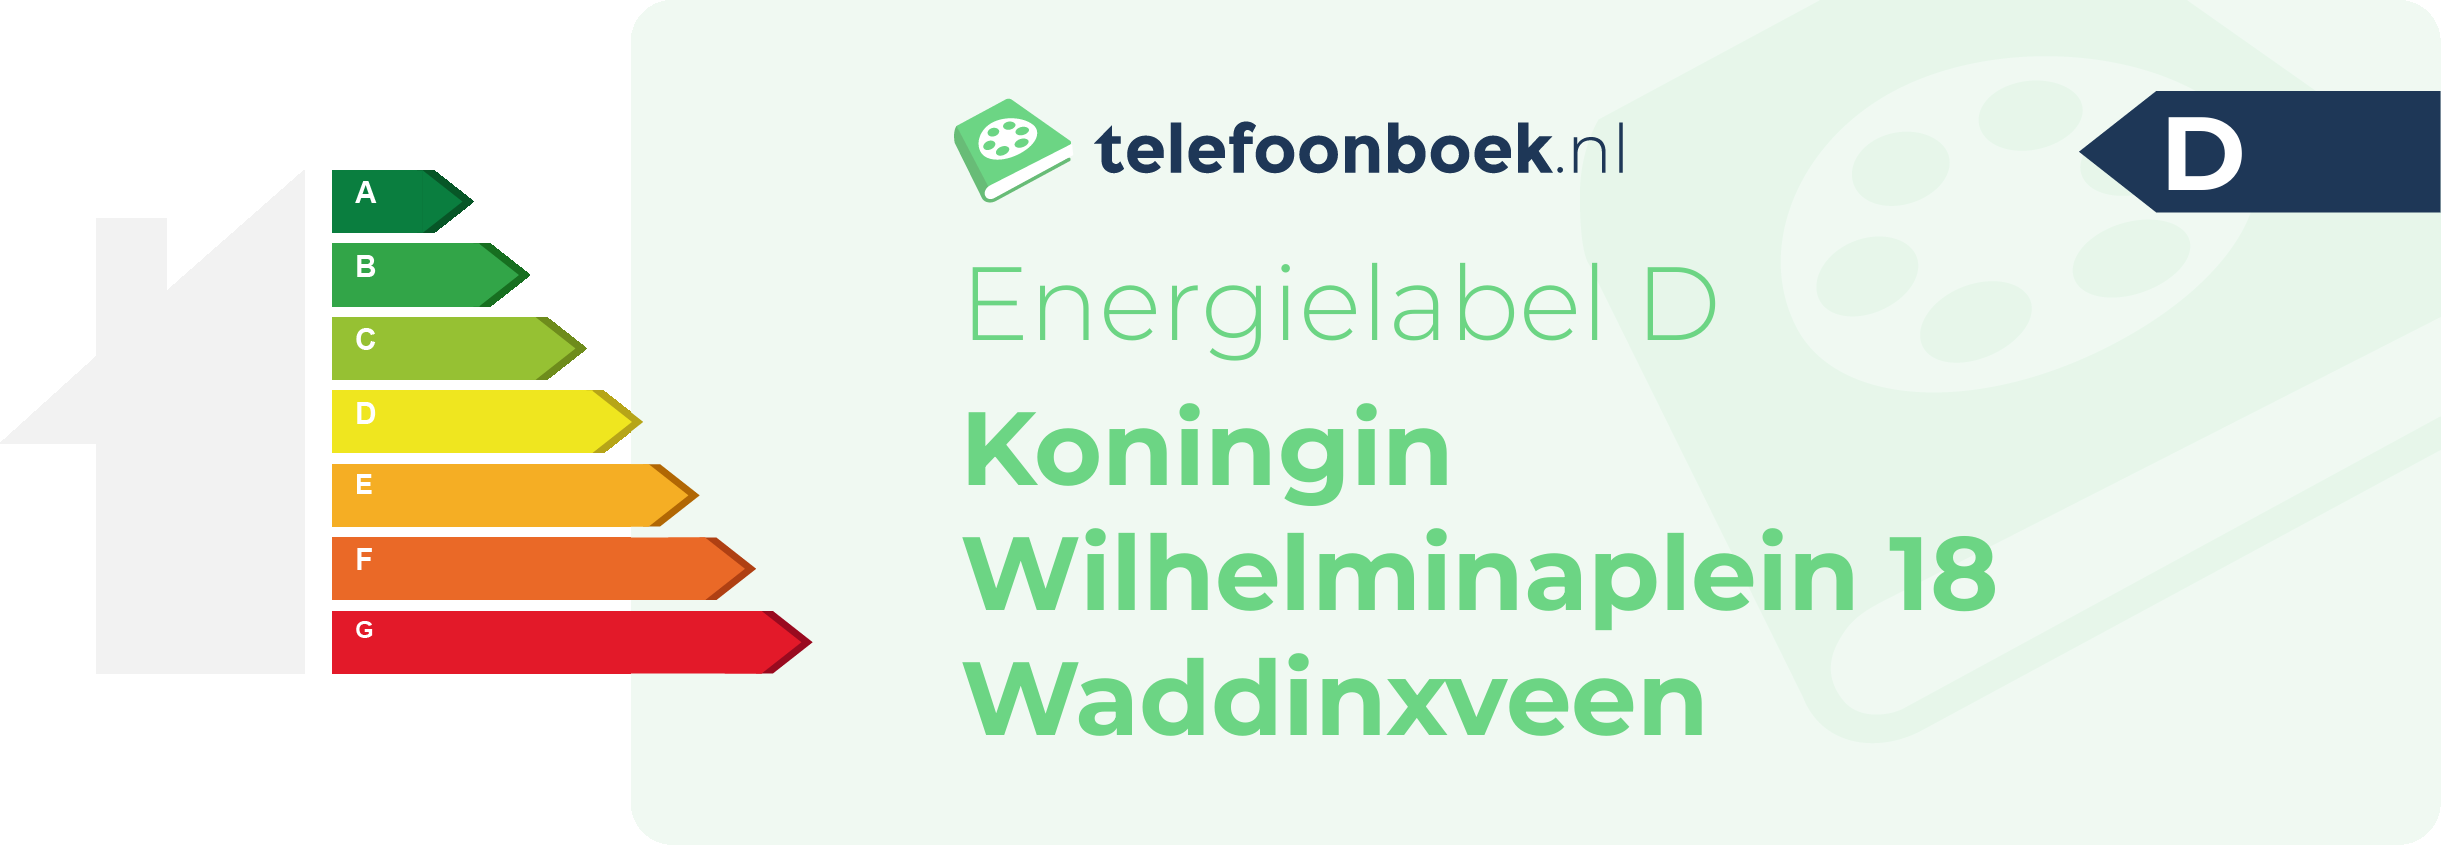 Energielabel Koningin Wilhelminaplein 18 Waddinxveen